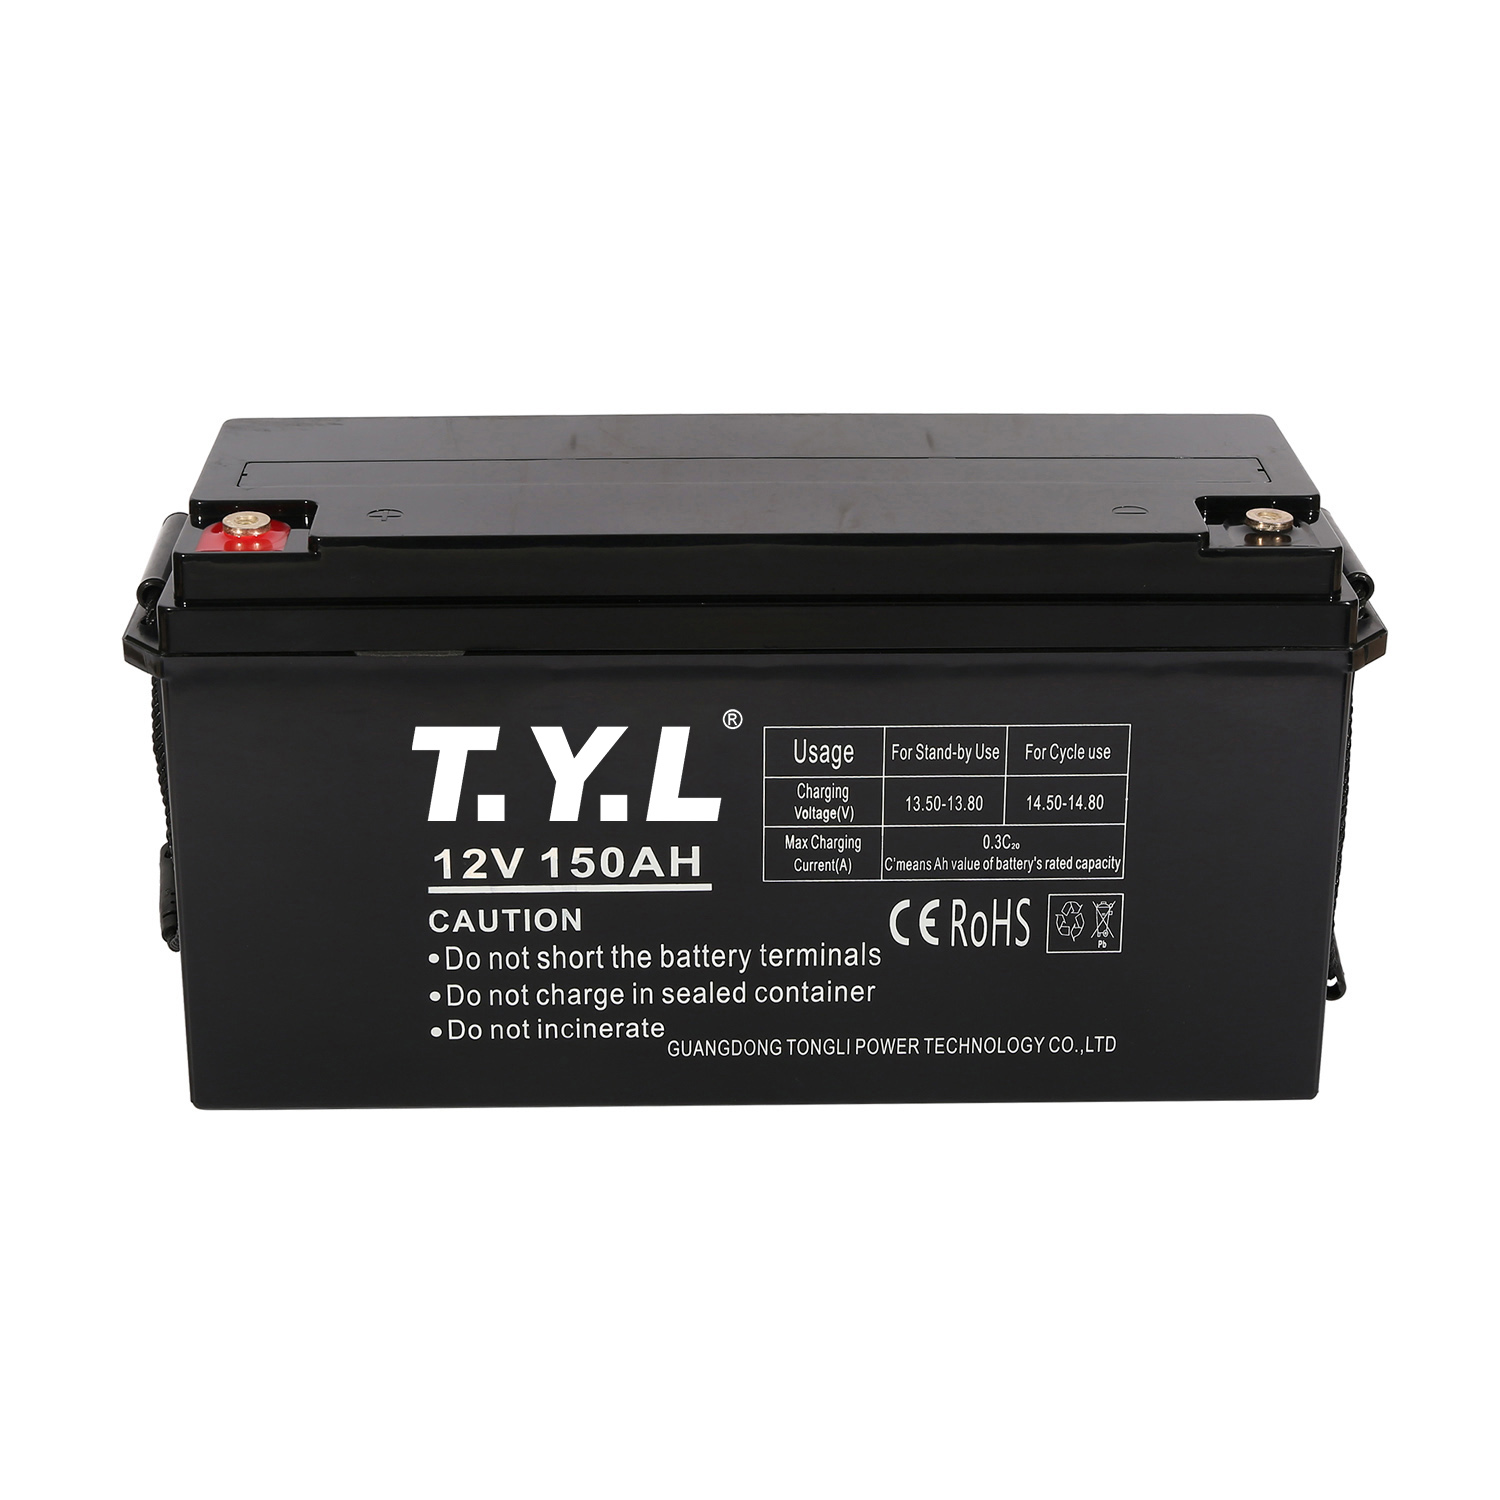 Batería de almacenamiento de productos químicos 12V130AH con terminales para sistemas eléctricos